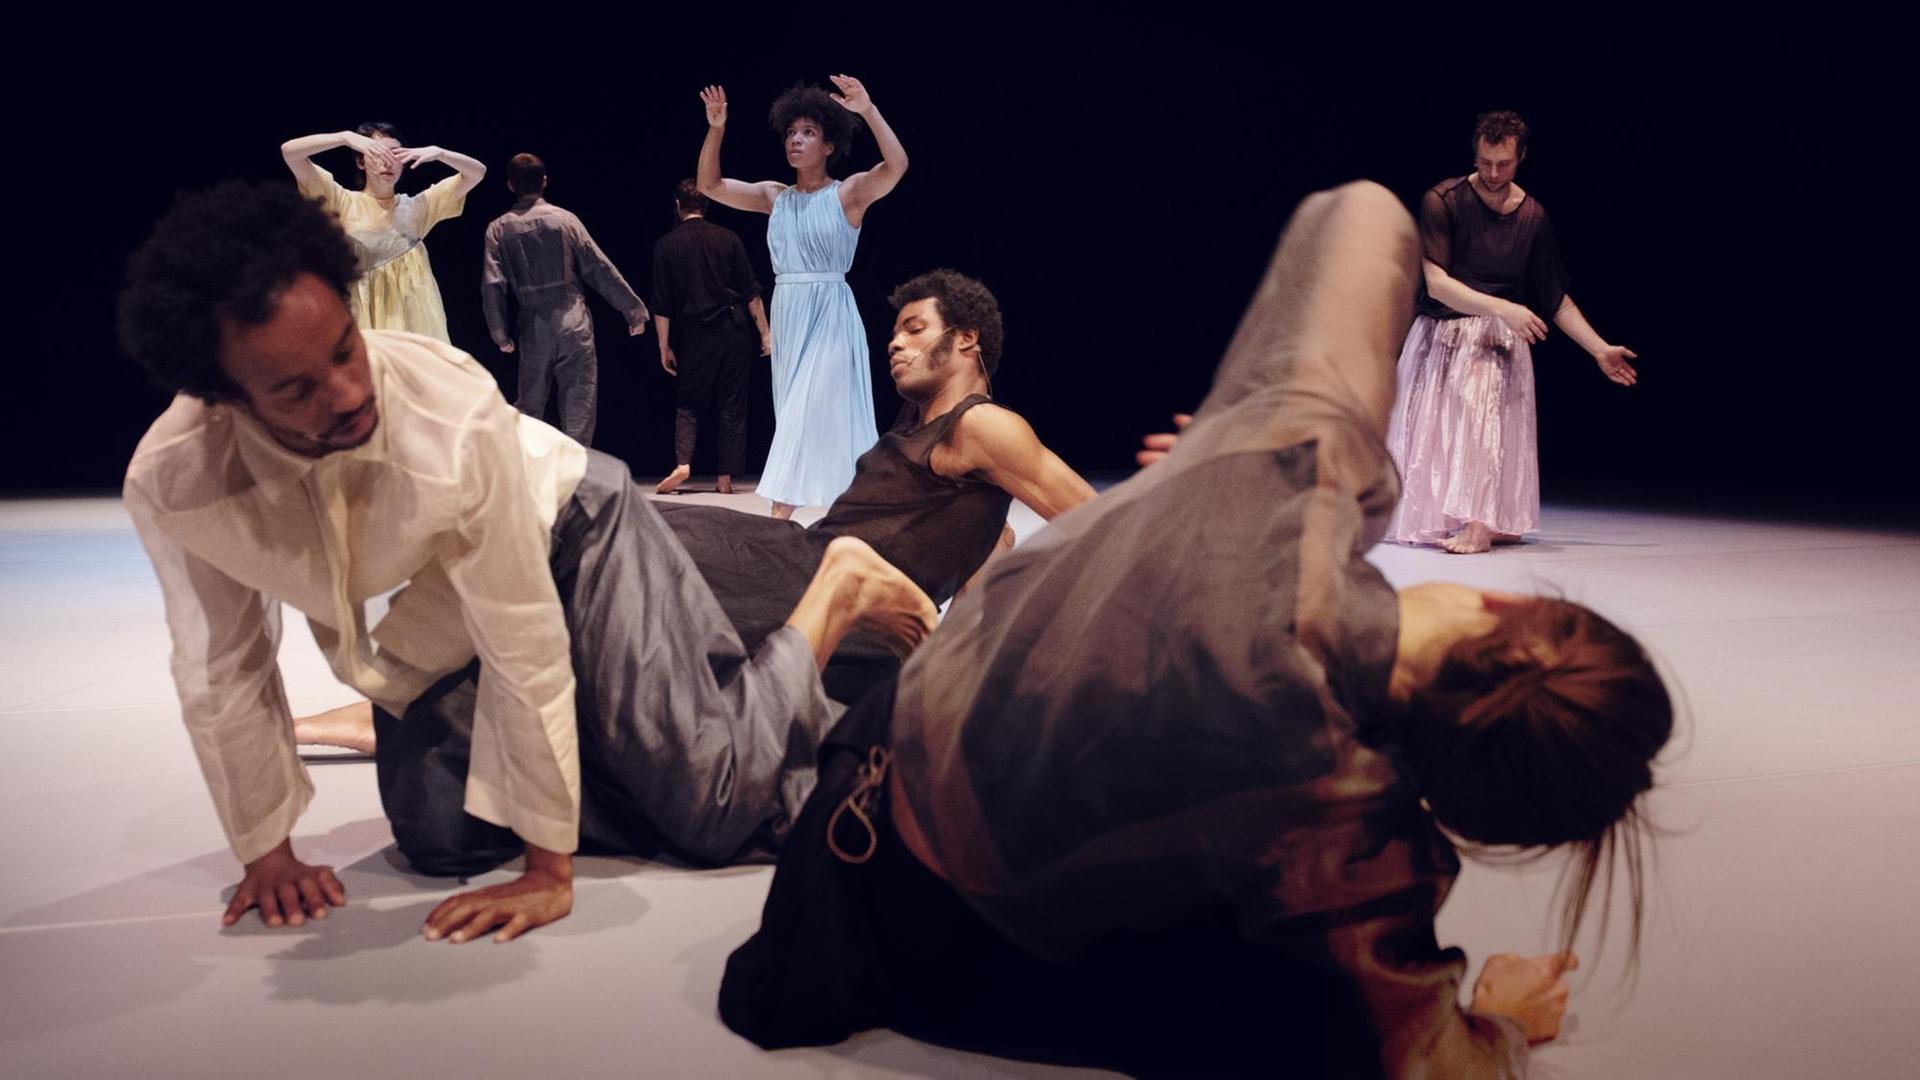 Tänzerinnen und Tänzer der schwedischen Kompanie "Cullberg" in einer Deutschlandpremiere von "The Listeners" inszeniert von Alma Söderberg am PACT Zollverein in Essen